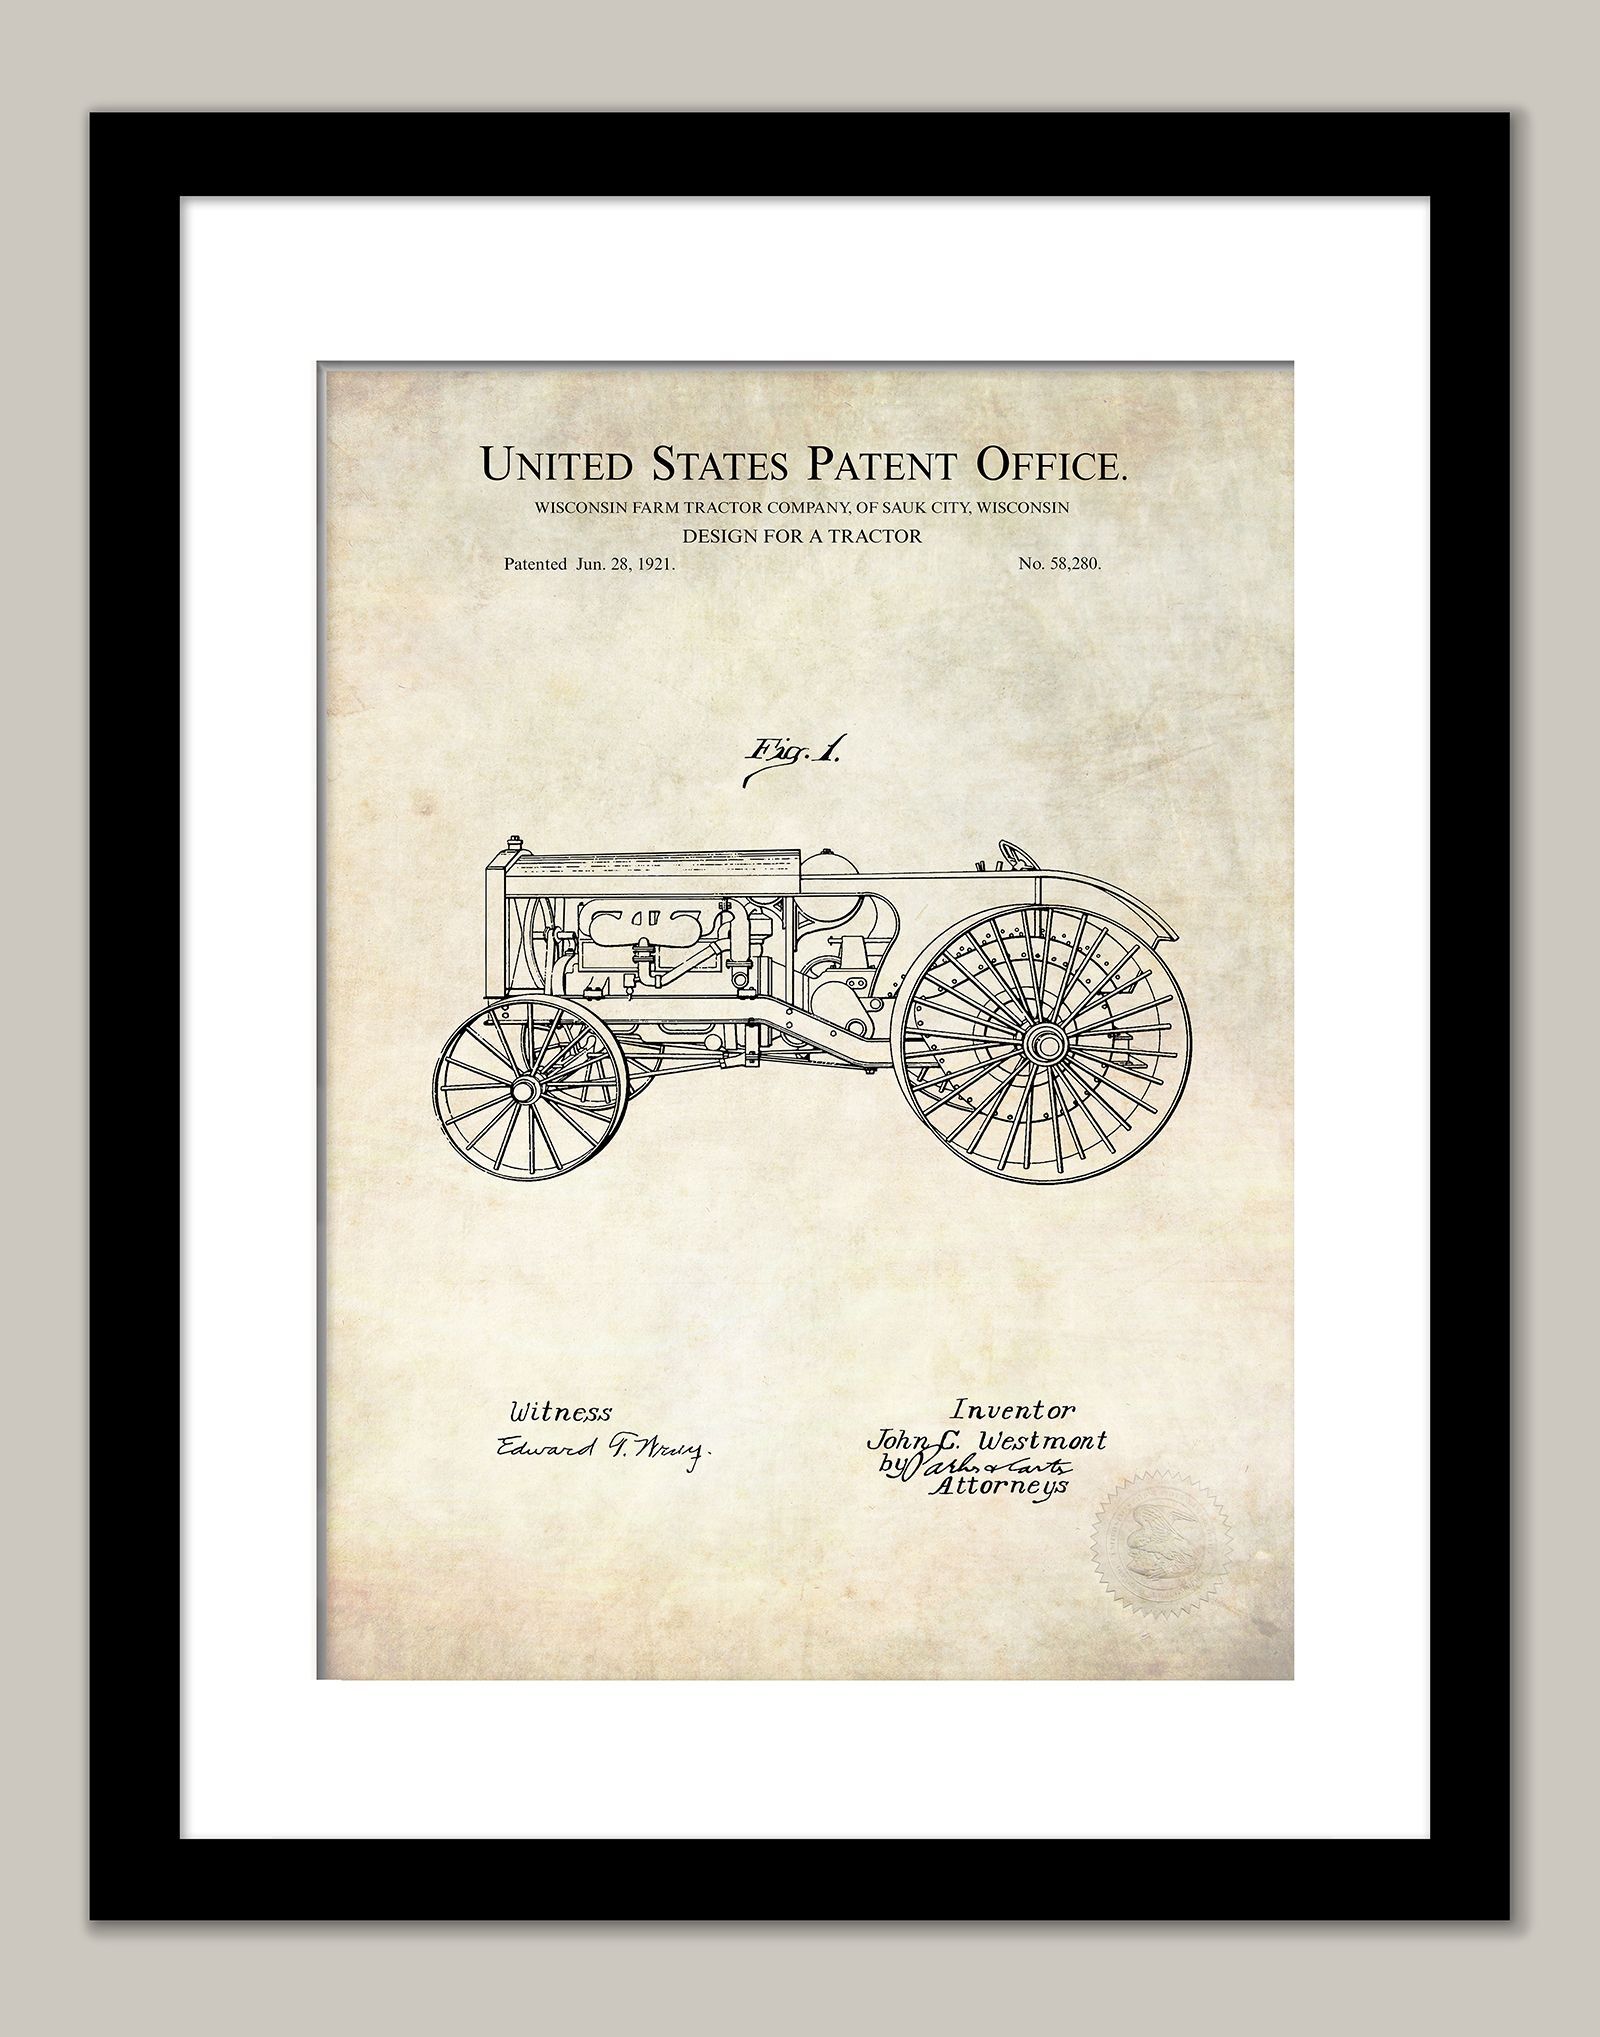 Wiconson Farm Tractor Company Patent